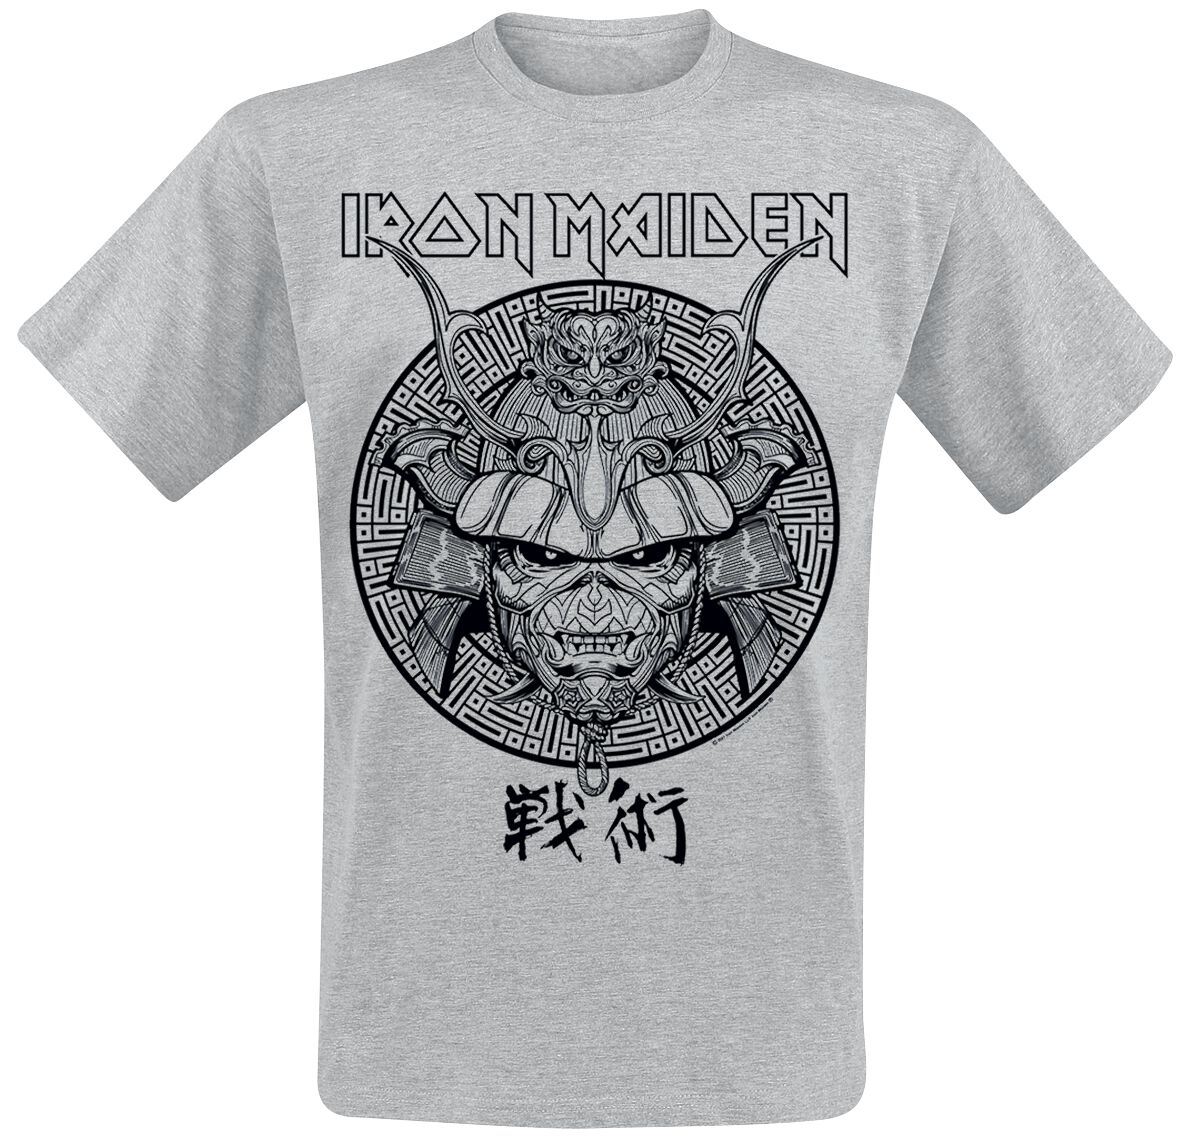 Iron Maiden T-Shirt - Samurai Eddie Black Graphic - S bis XXL - für Männer - Größe L - grau  - Lizenziertes Merchandise!